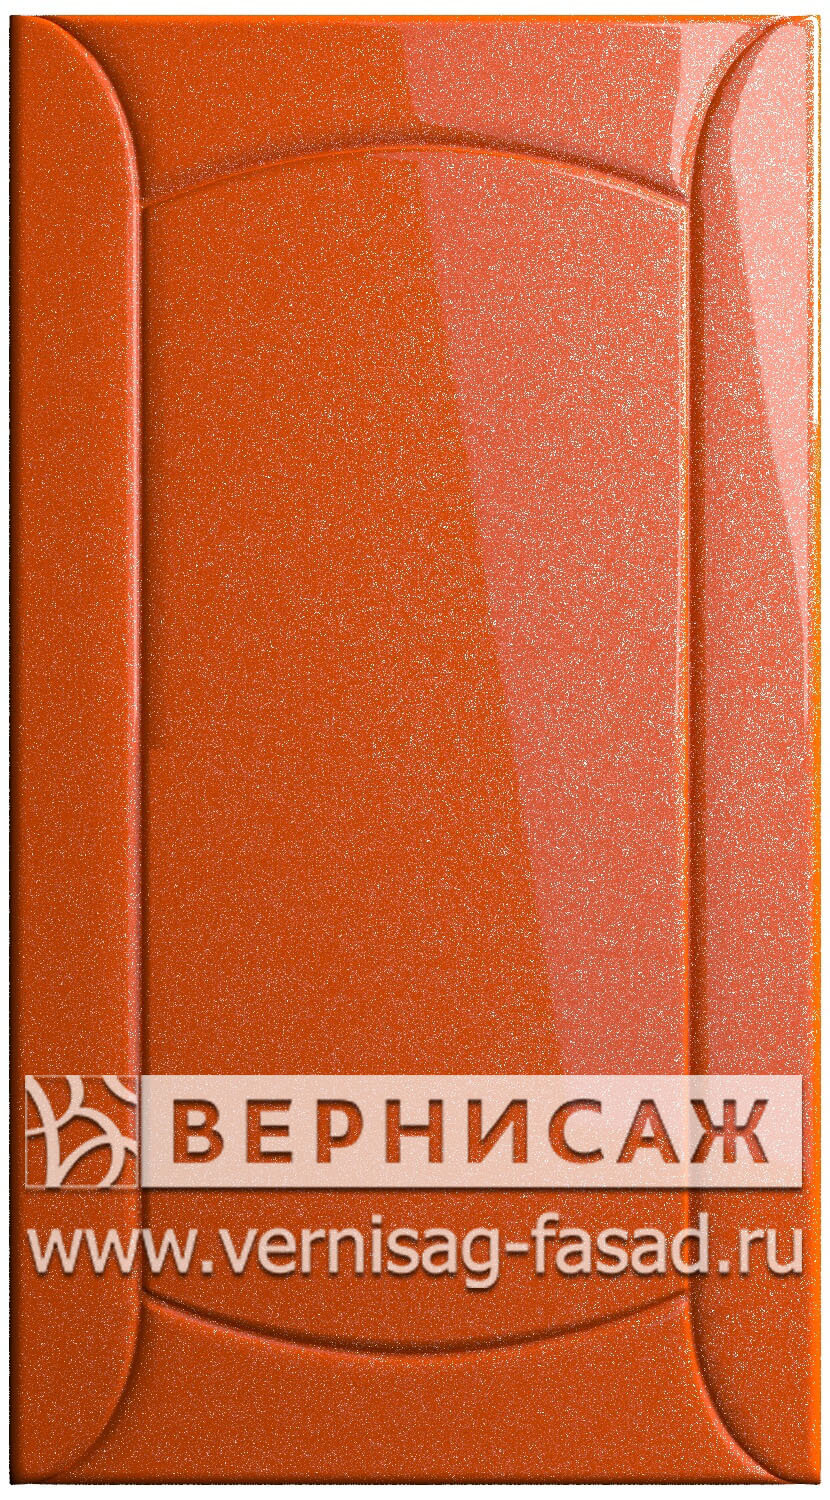  Фасады в пленке ПВХ, Фрезеровка № 20, цвет Сигнал оранж металлик